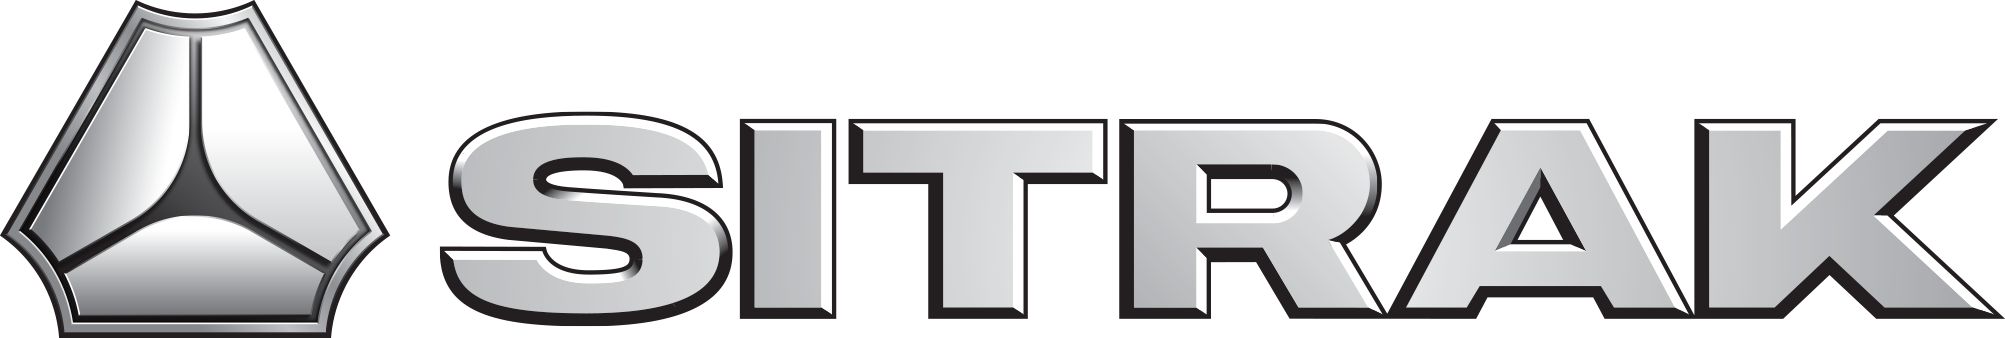 Sitrak logo 1x